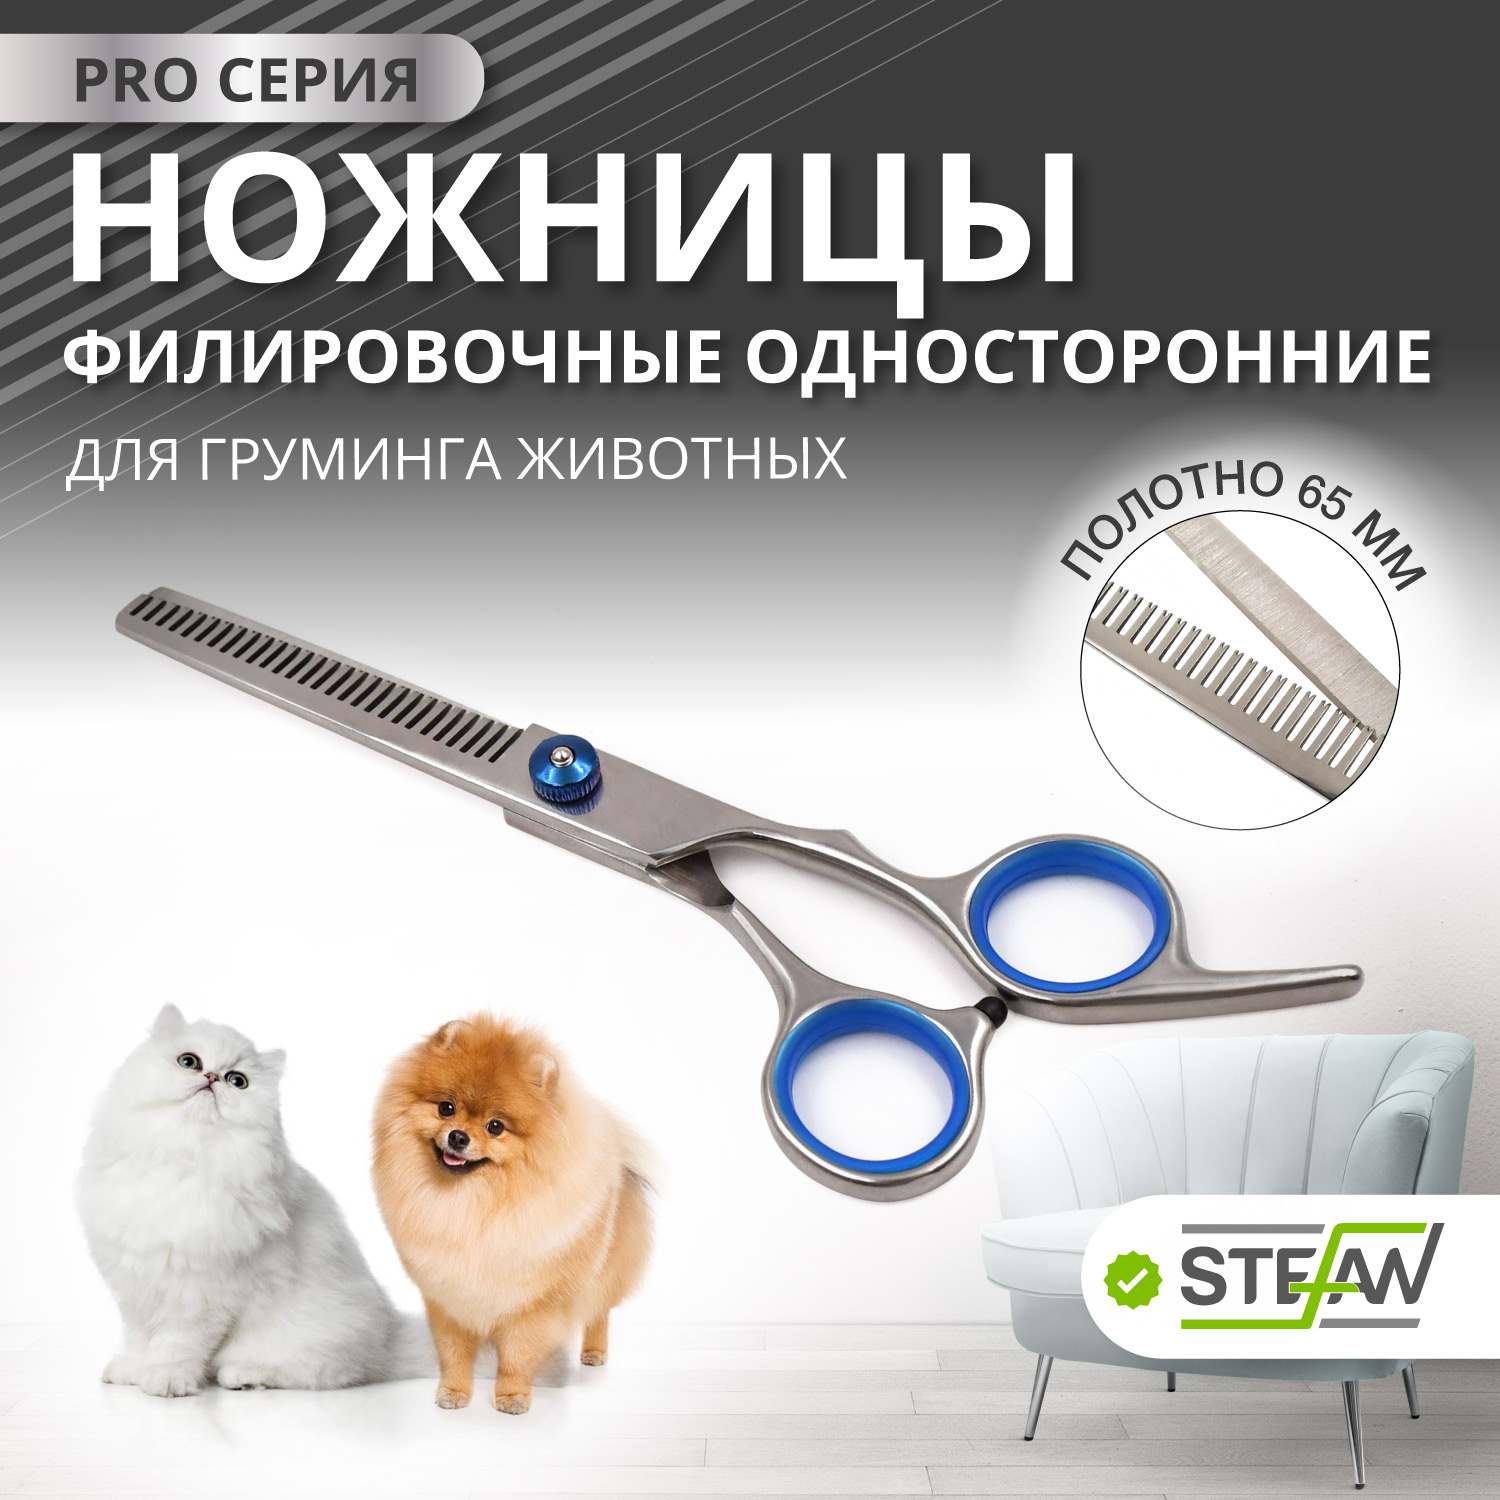 Ножницы PRO филировочные односторонние для груминга животных STEFAN, полотно 65мм, GST1465